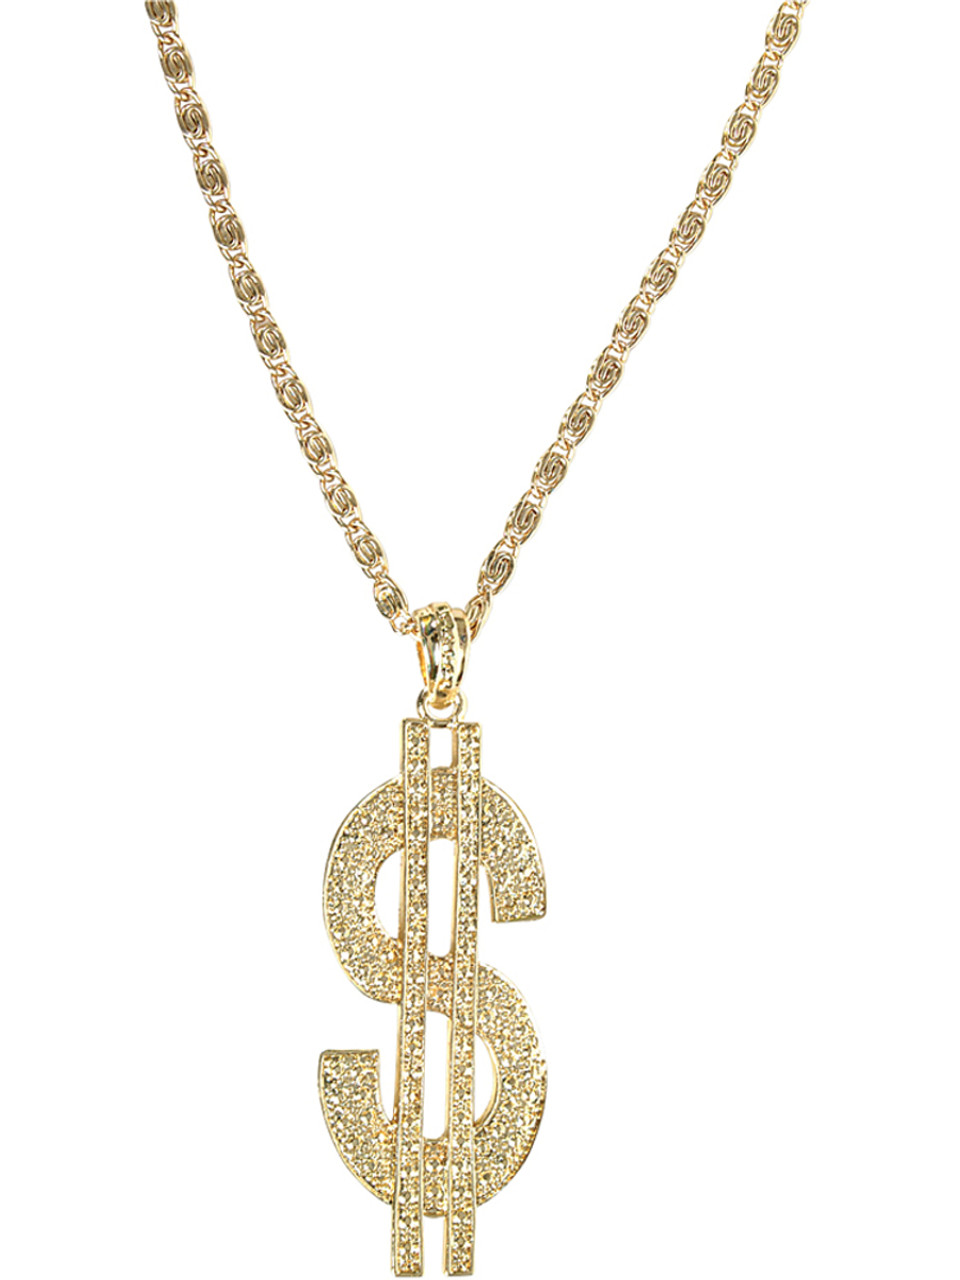 golden gangster chain